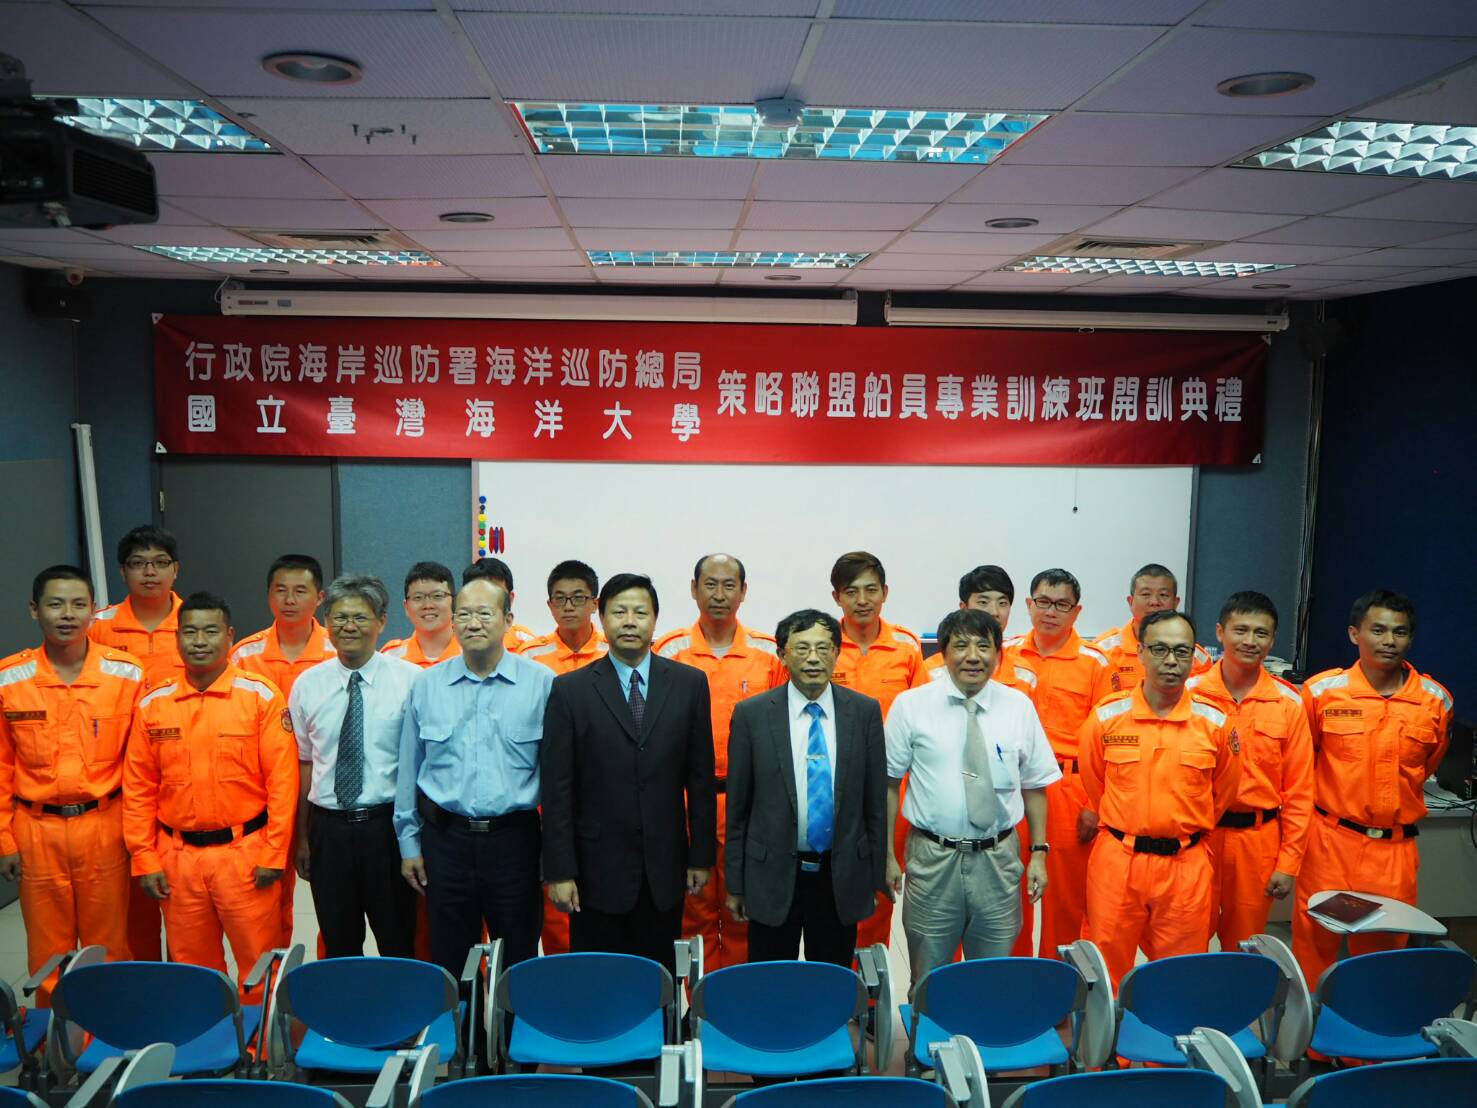 「106年度船員專業訓練策略聯盟委託國立台灣海洋大學辦理管理級雷達及ARPA班」開訓典禮